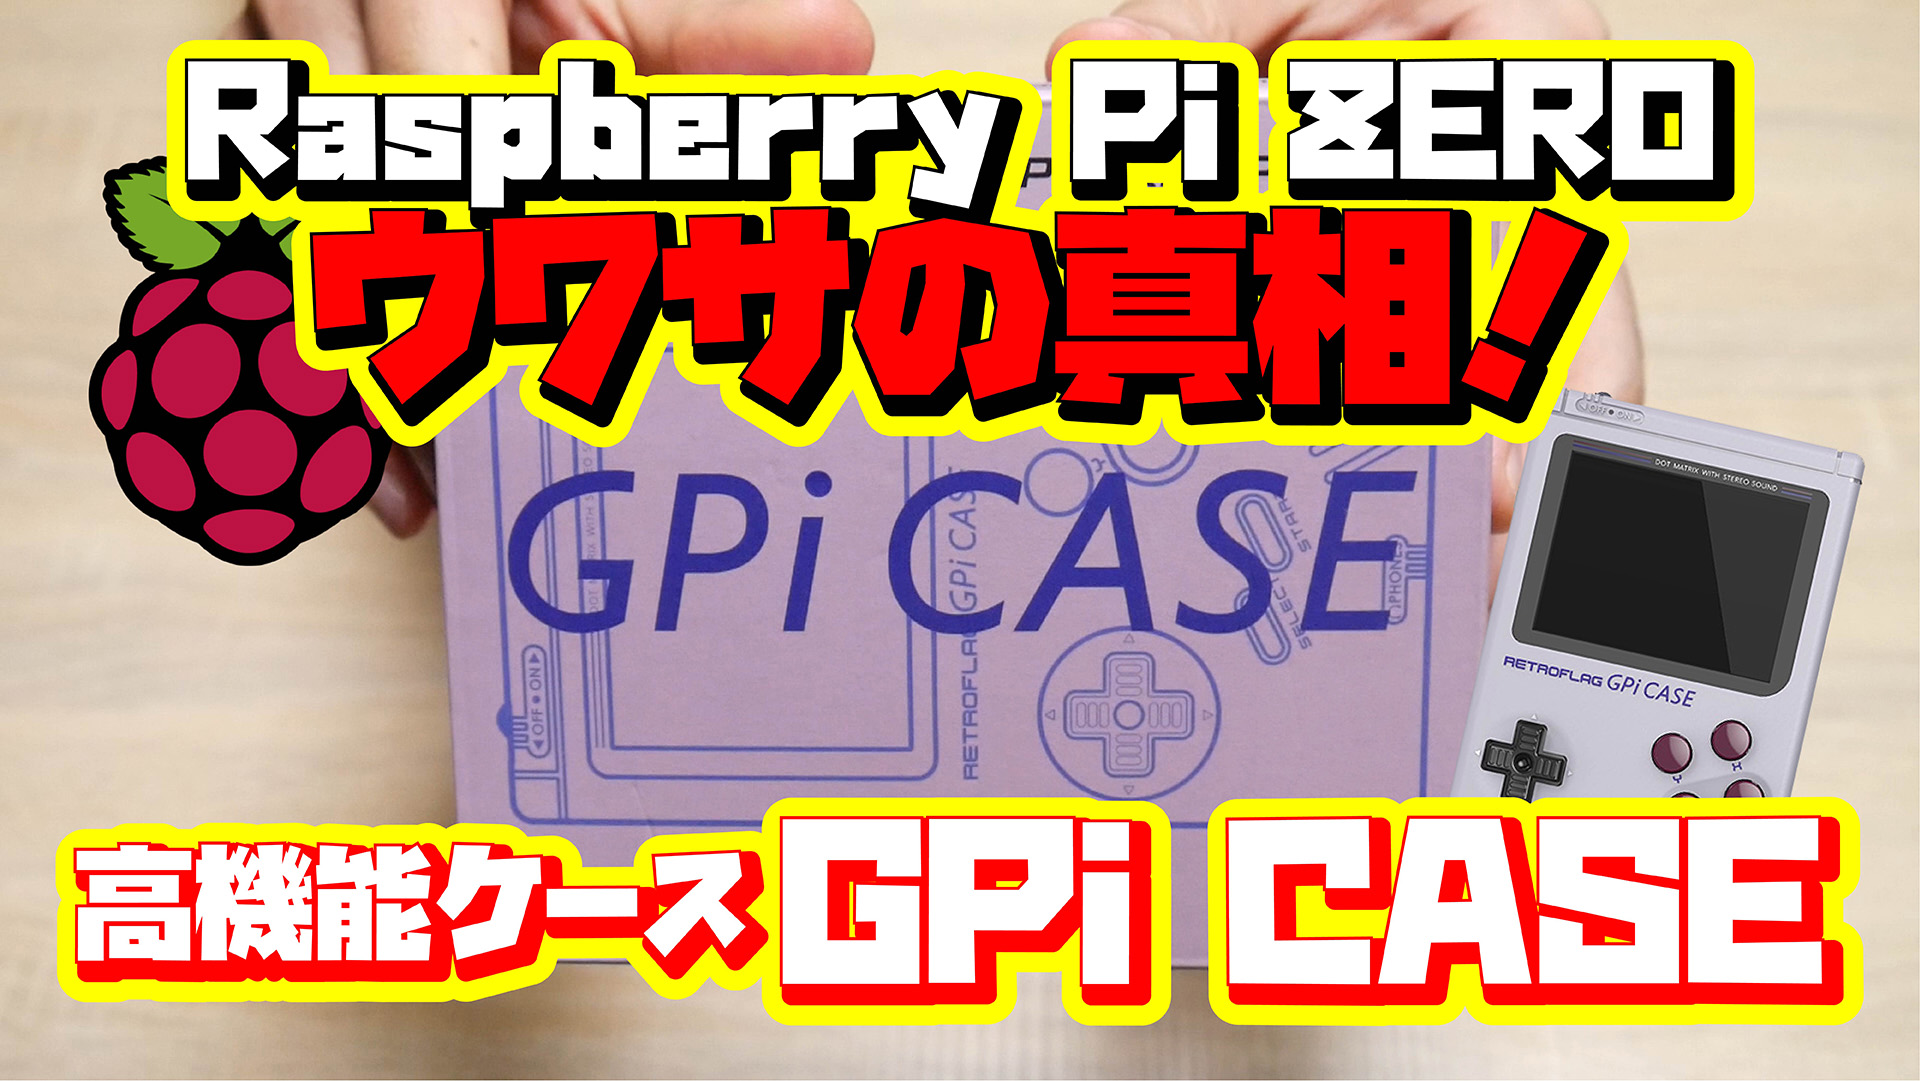 Raspberry Pi ZERO ウワサの真相！専用高機能ケース GPi CASE を買ってみた！